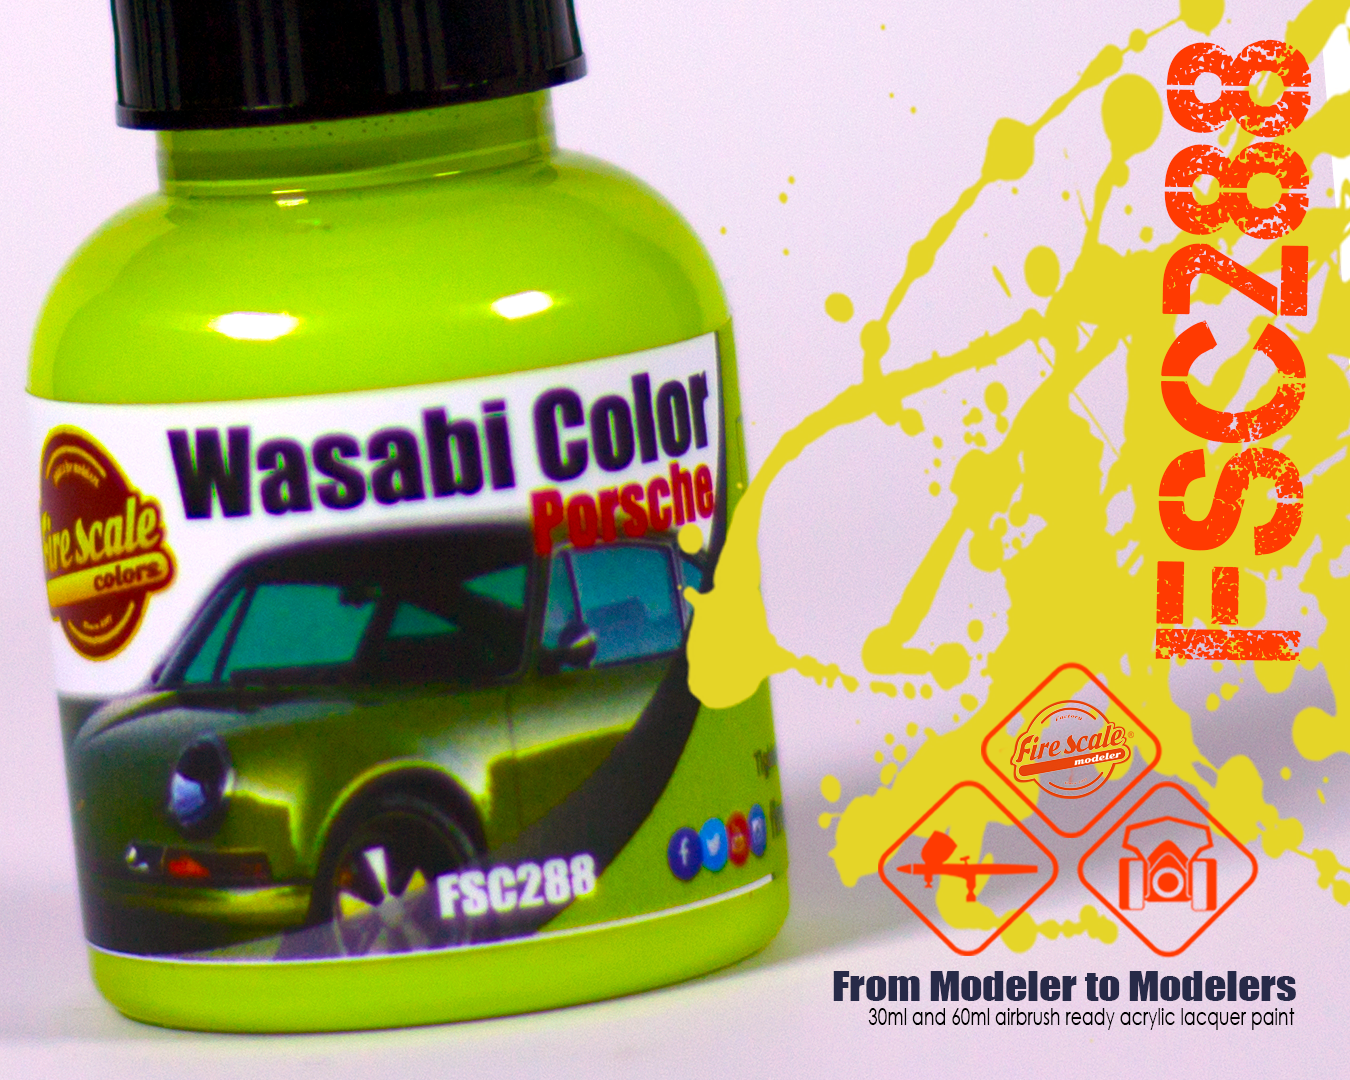 Wasabi Color Porsche